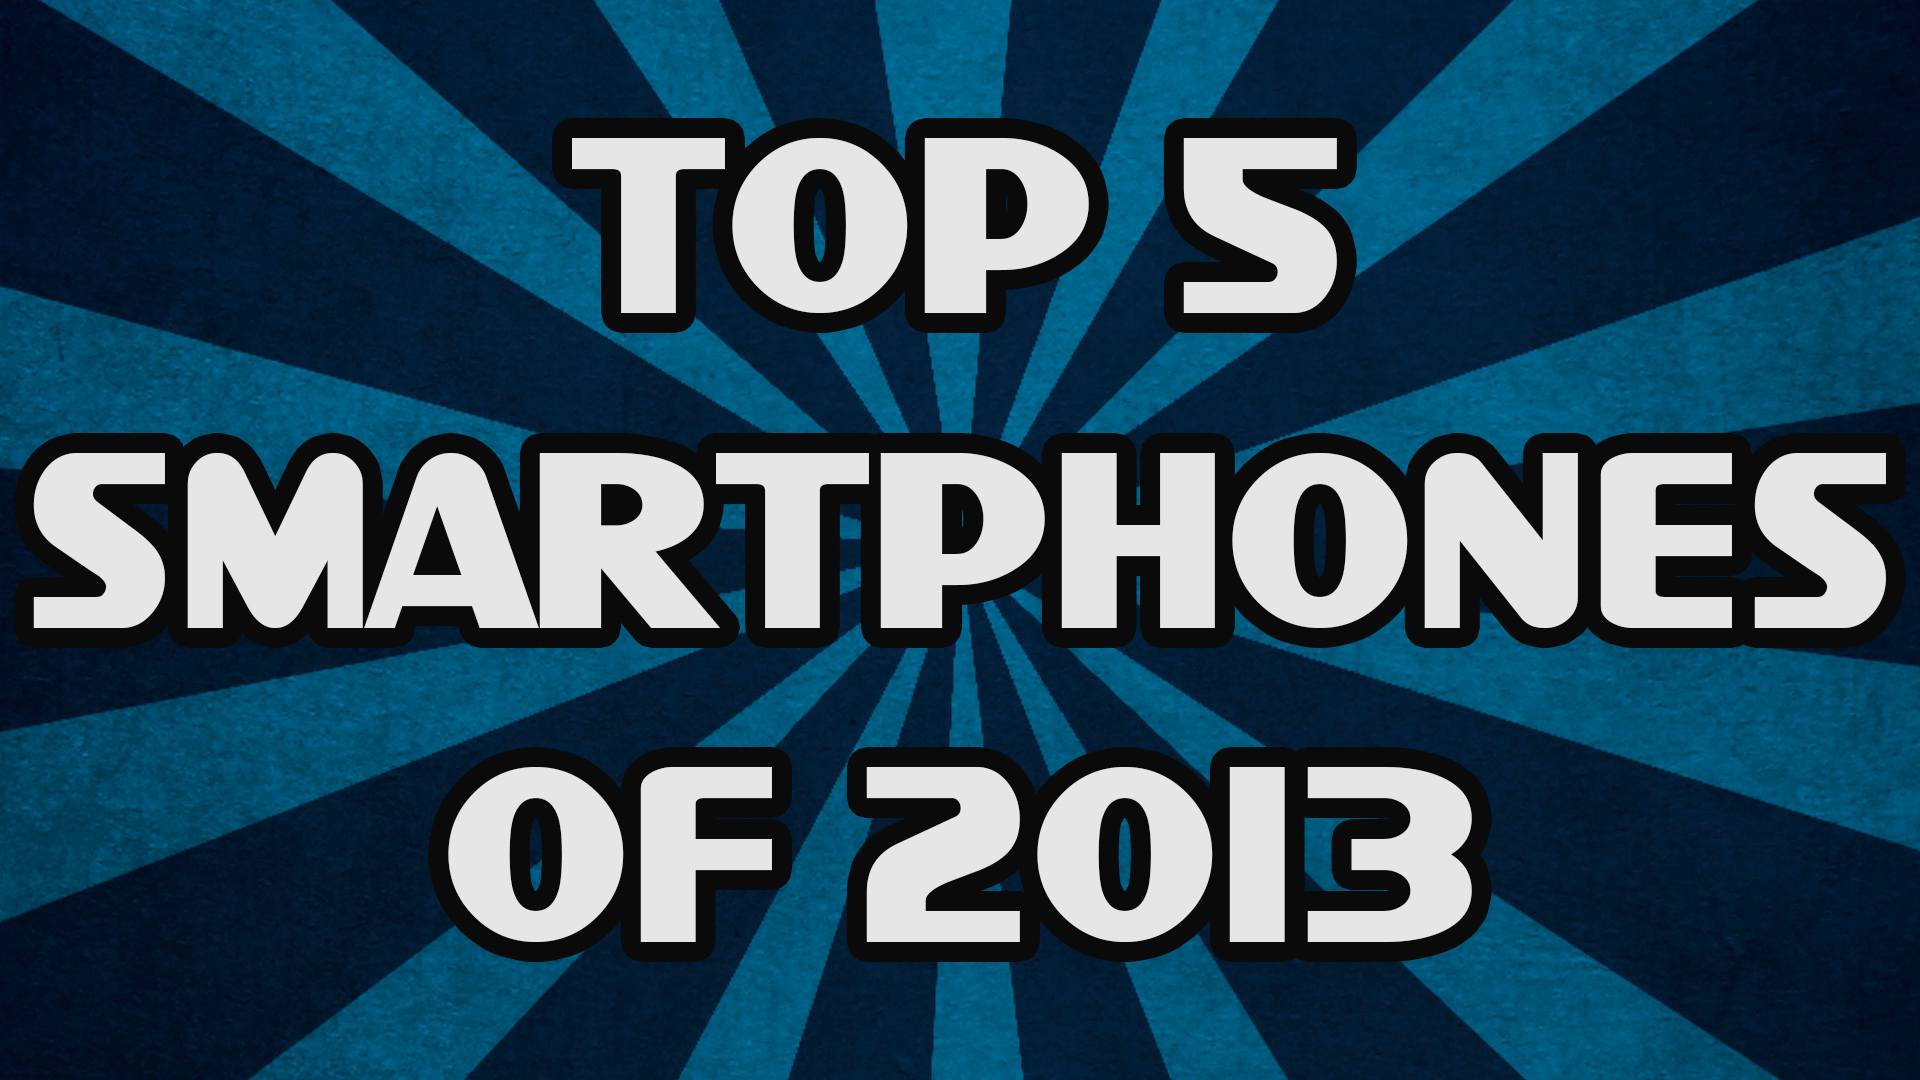 Top 5 Smartphones of 2013